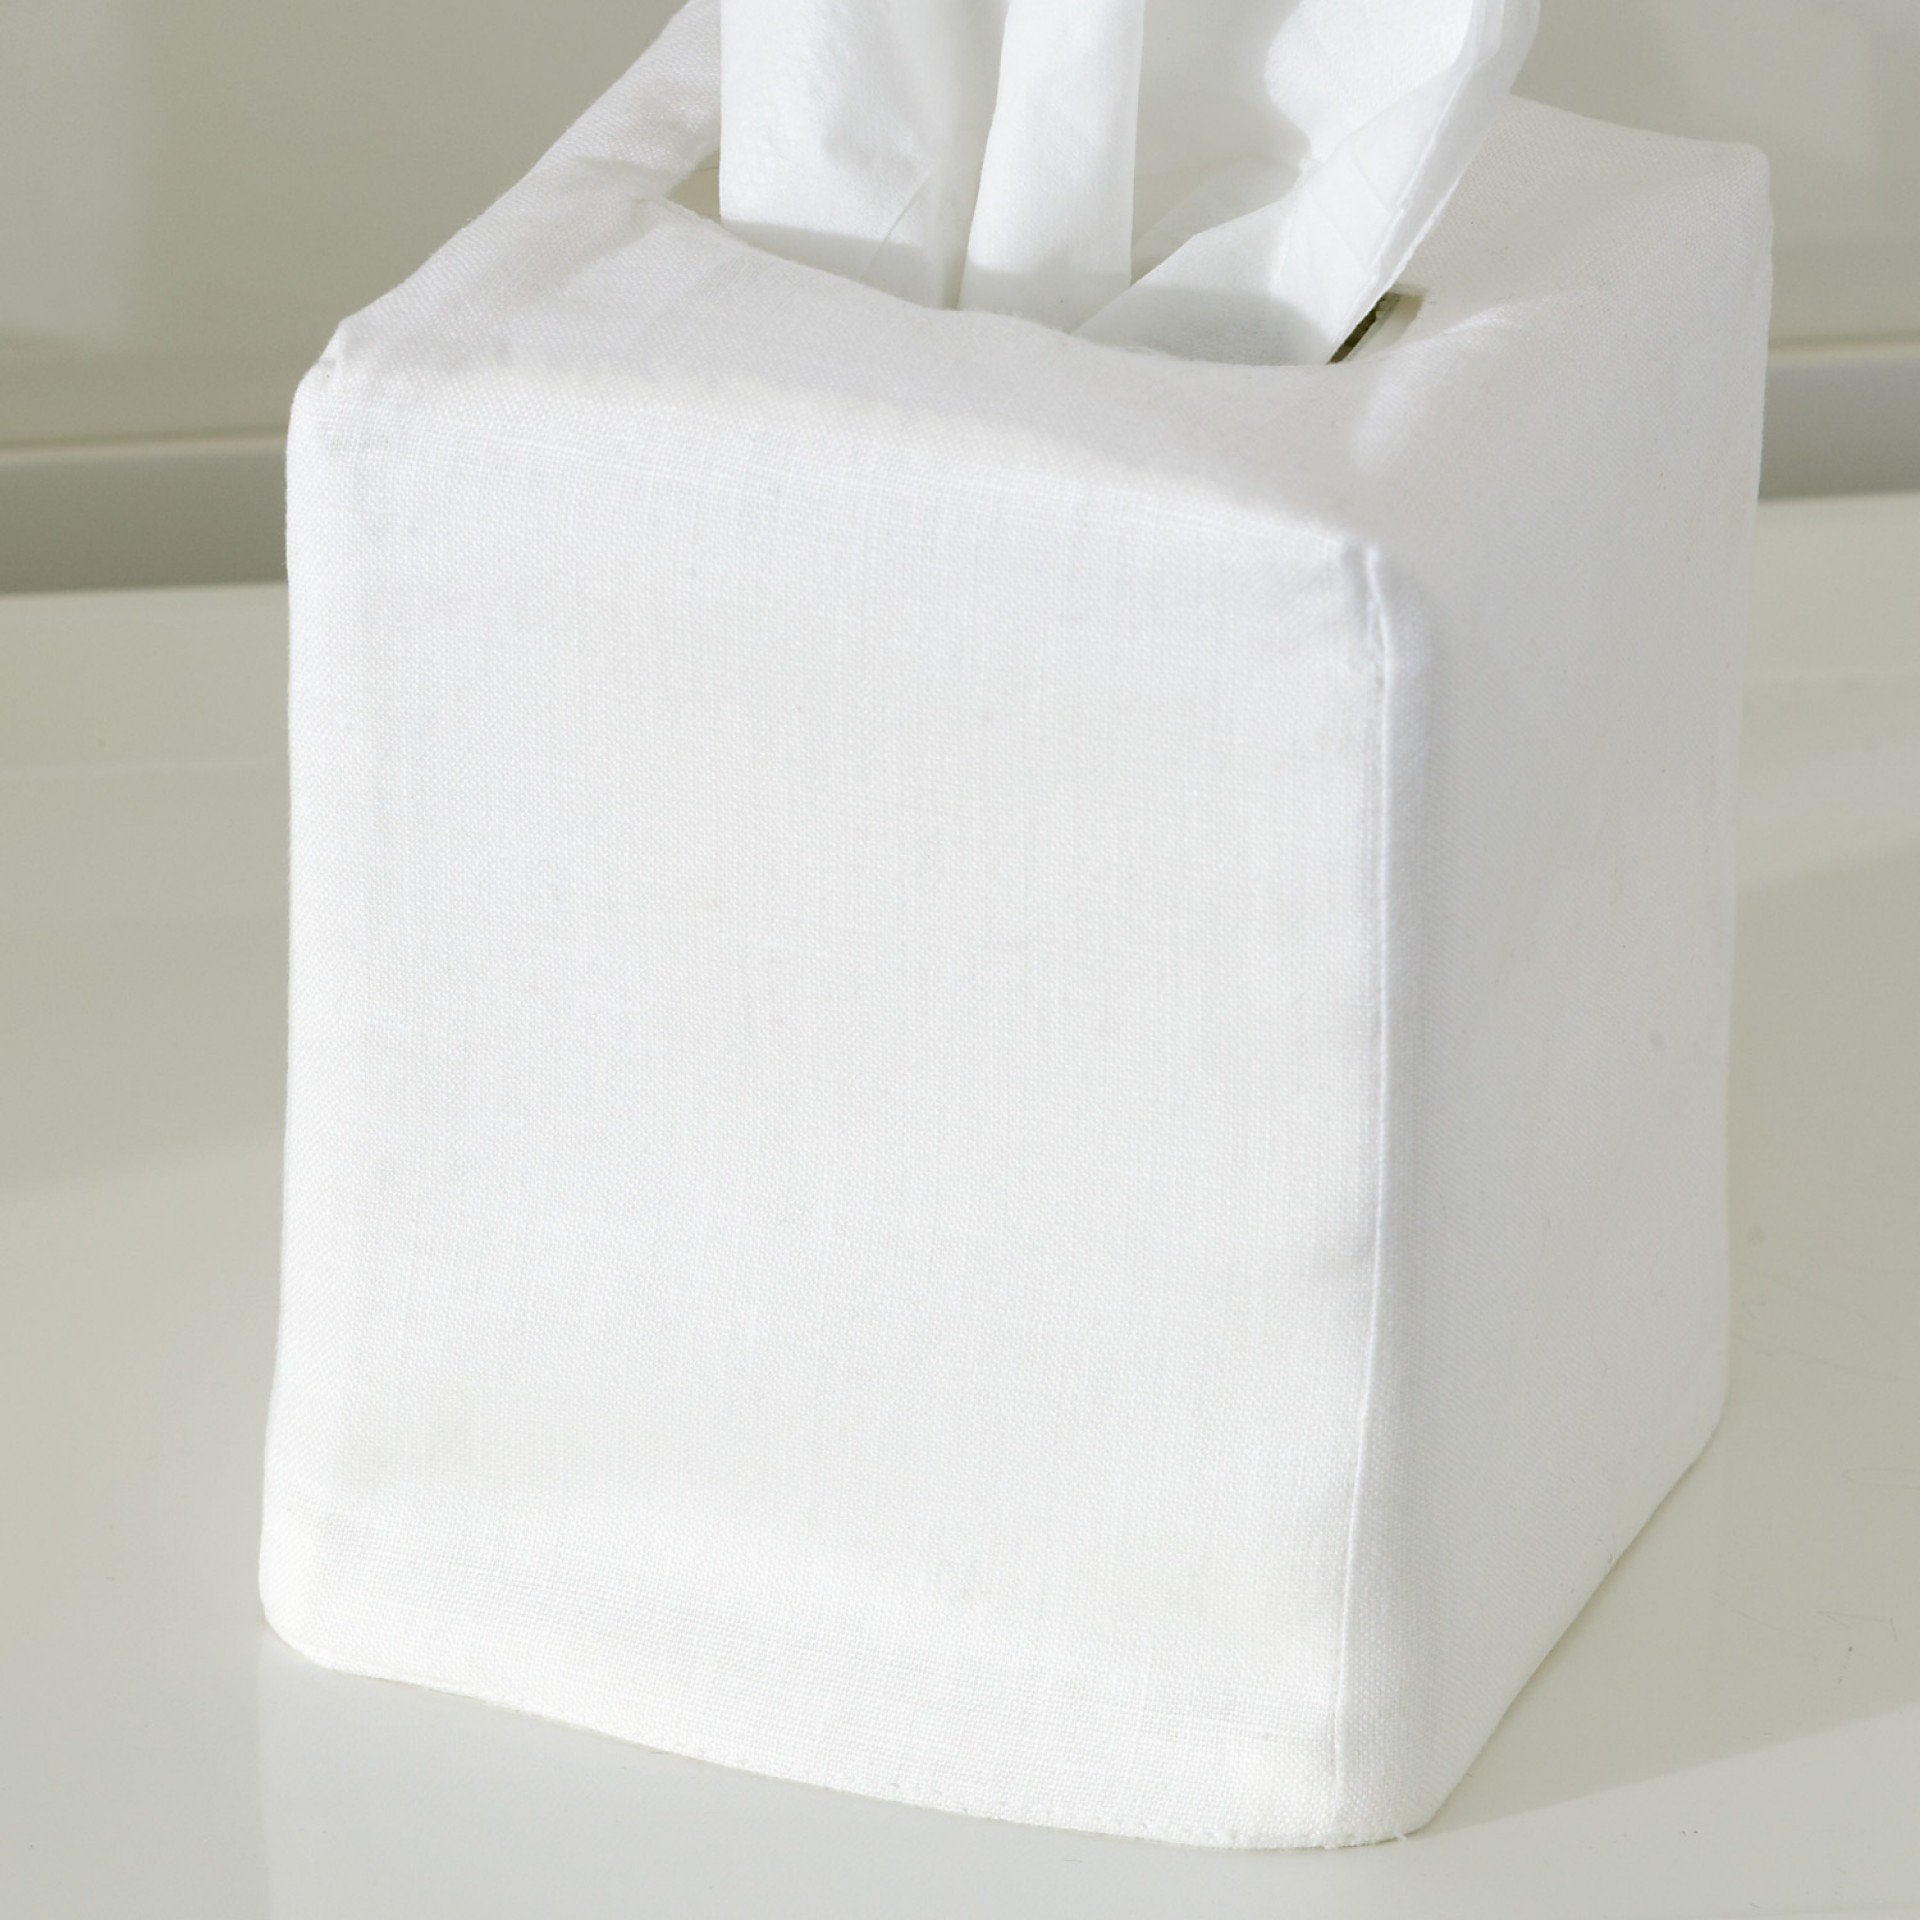 Matouk Plain White Tissue Box Cover | Fig Linens and Home